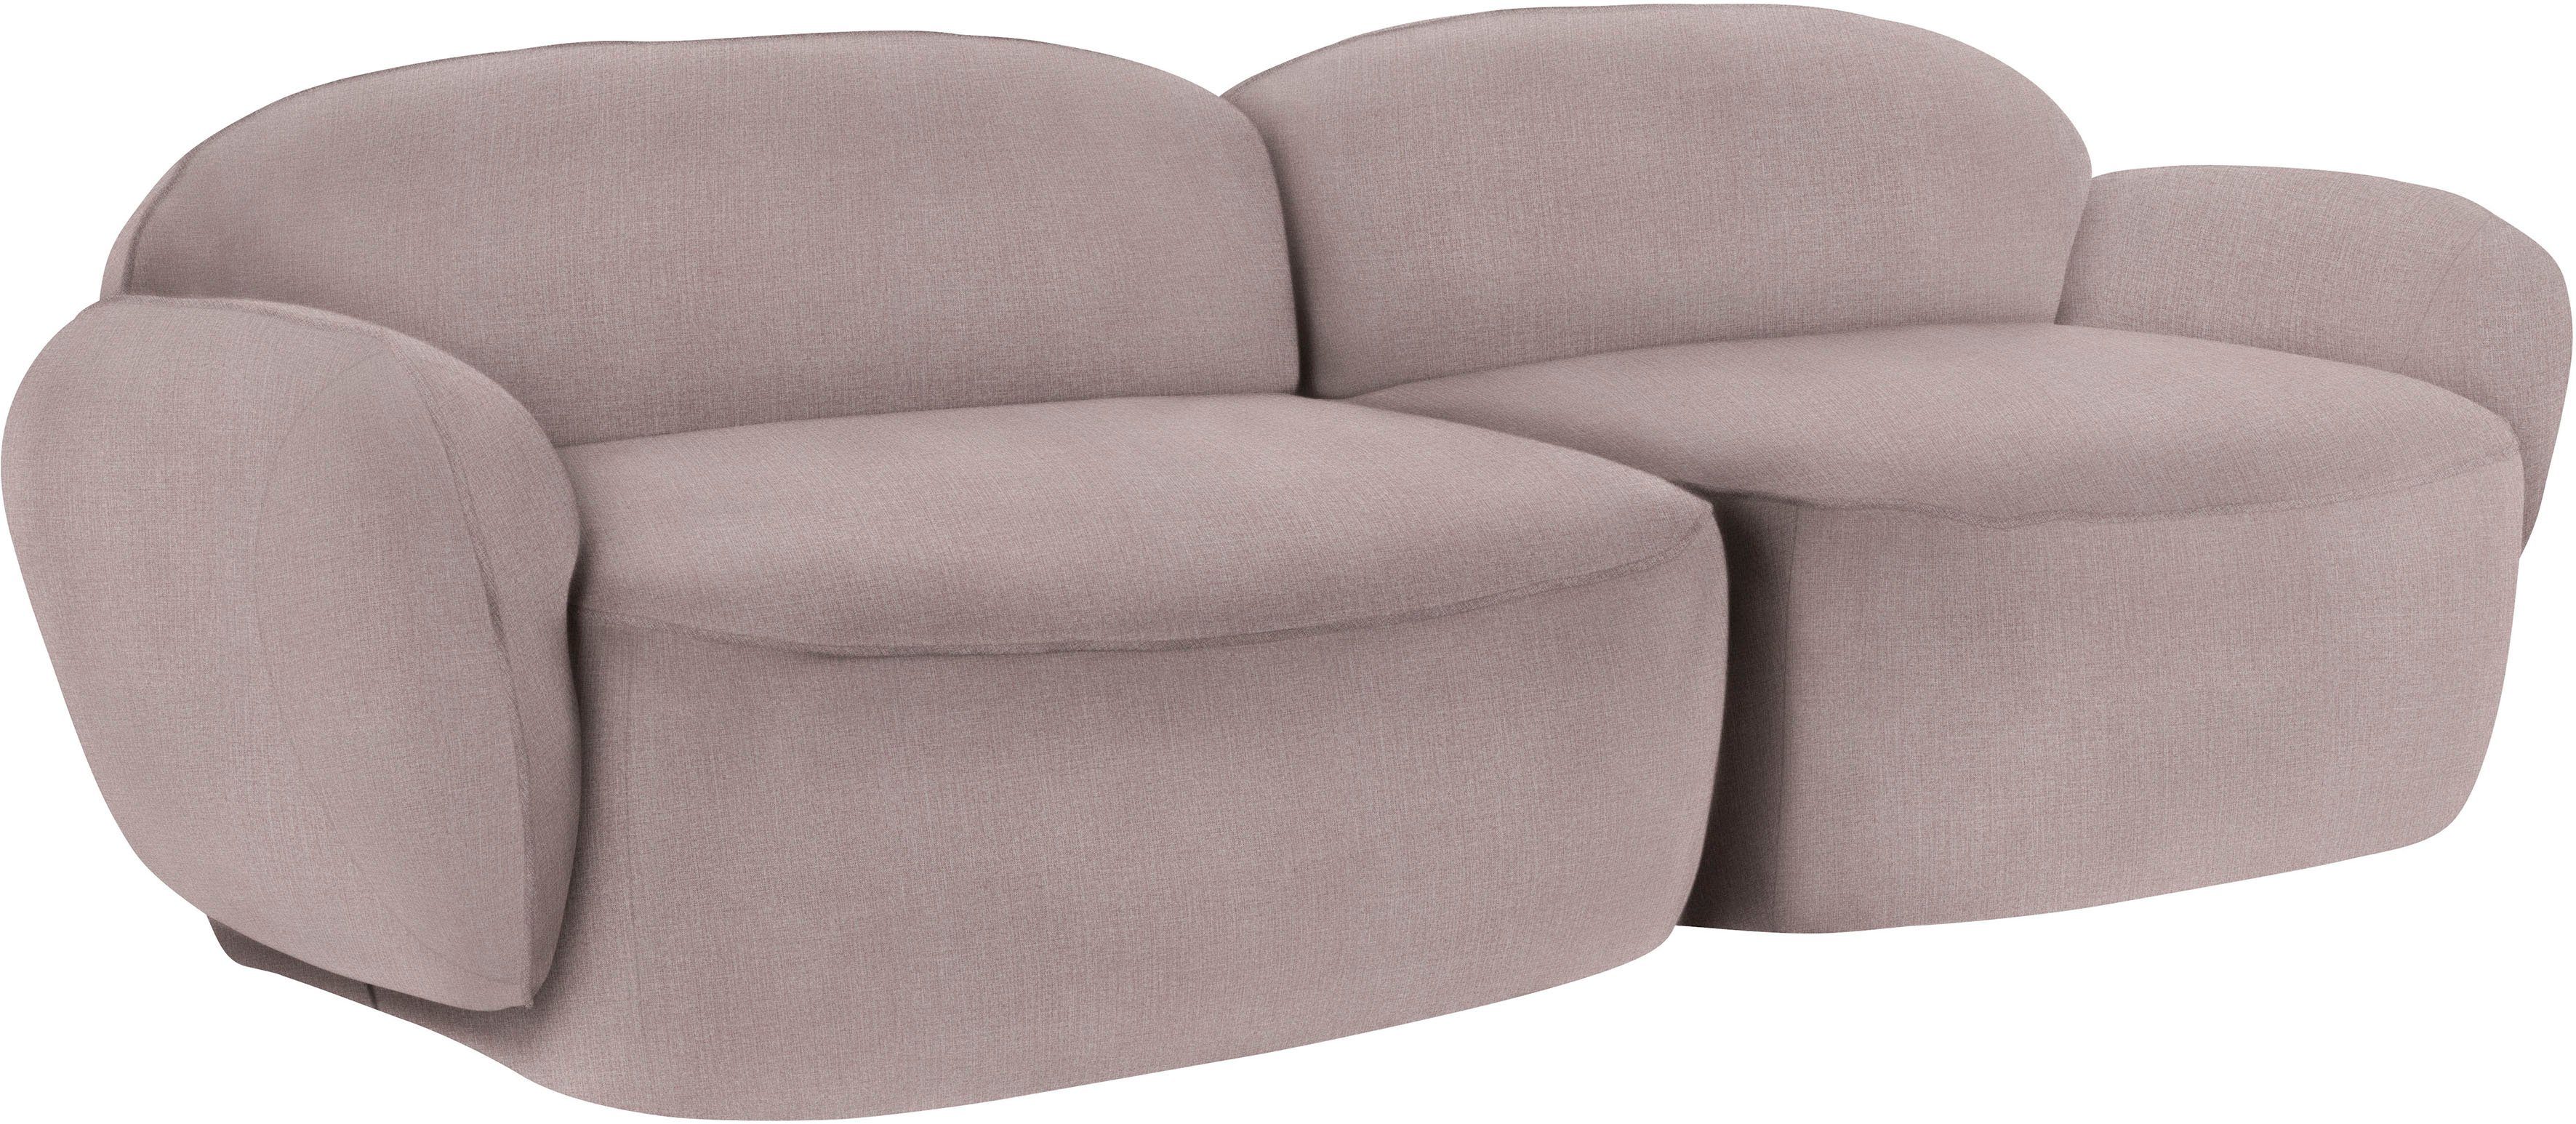 furninova Memoryschaum, skandinavischen 2,5-Sitzer durch komfortabel Design Bubble, im